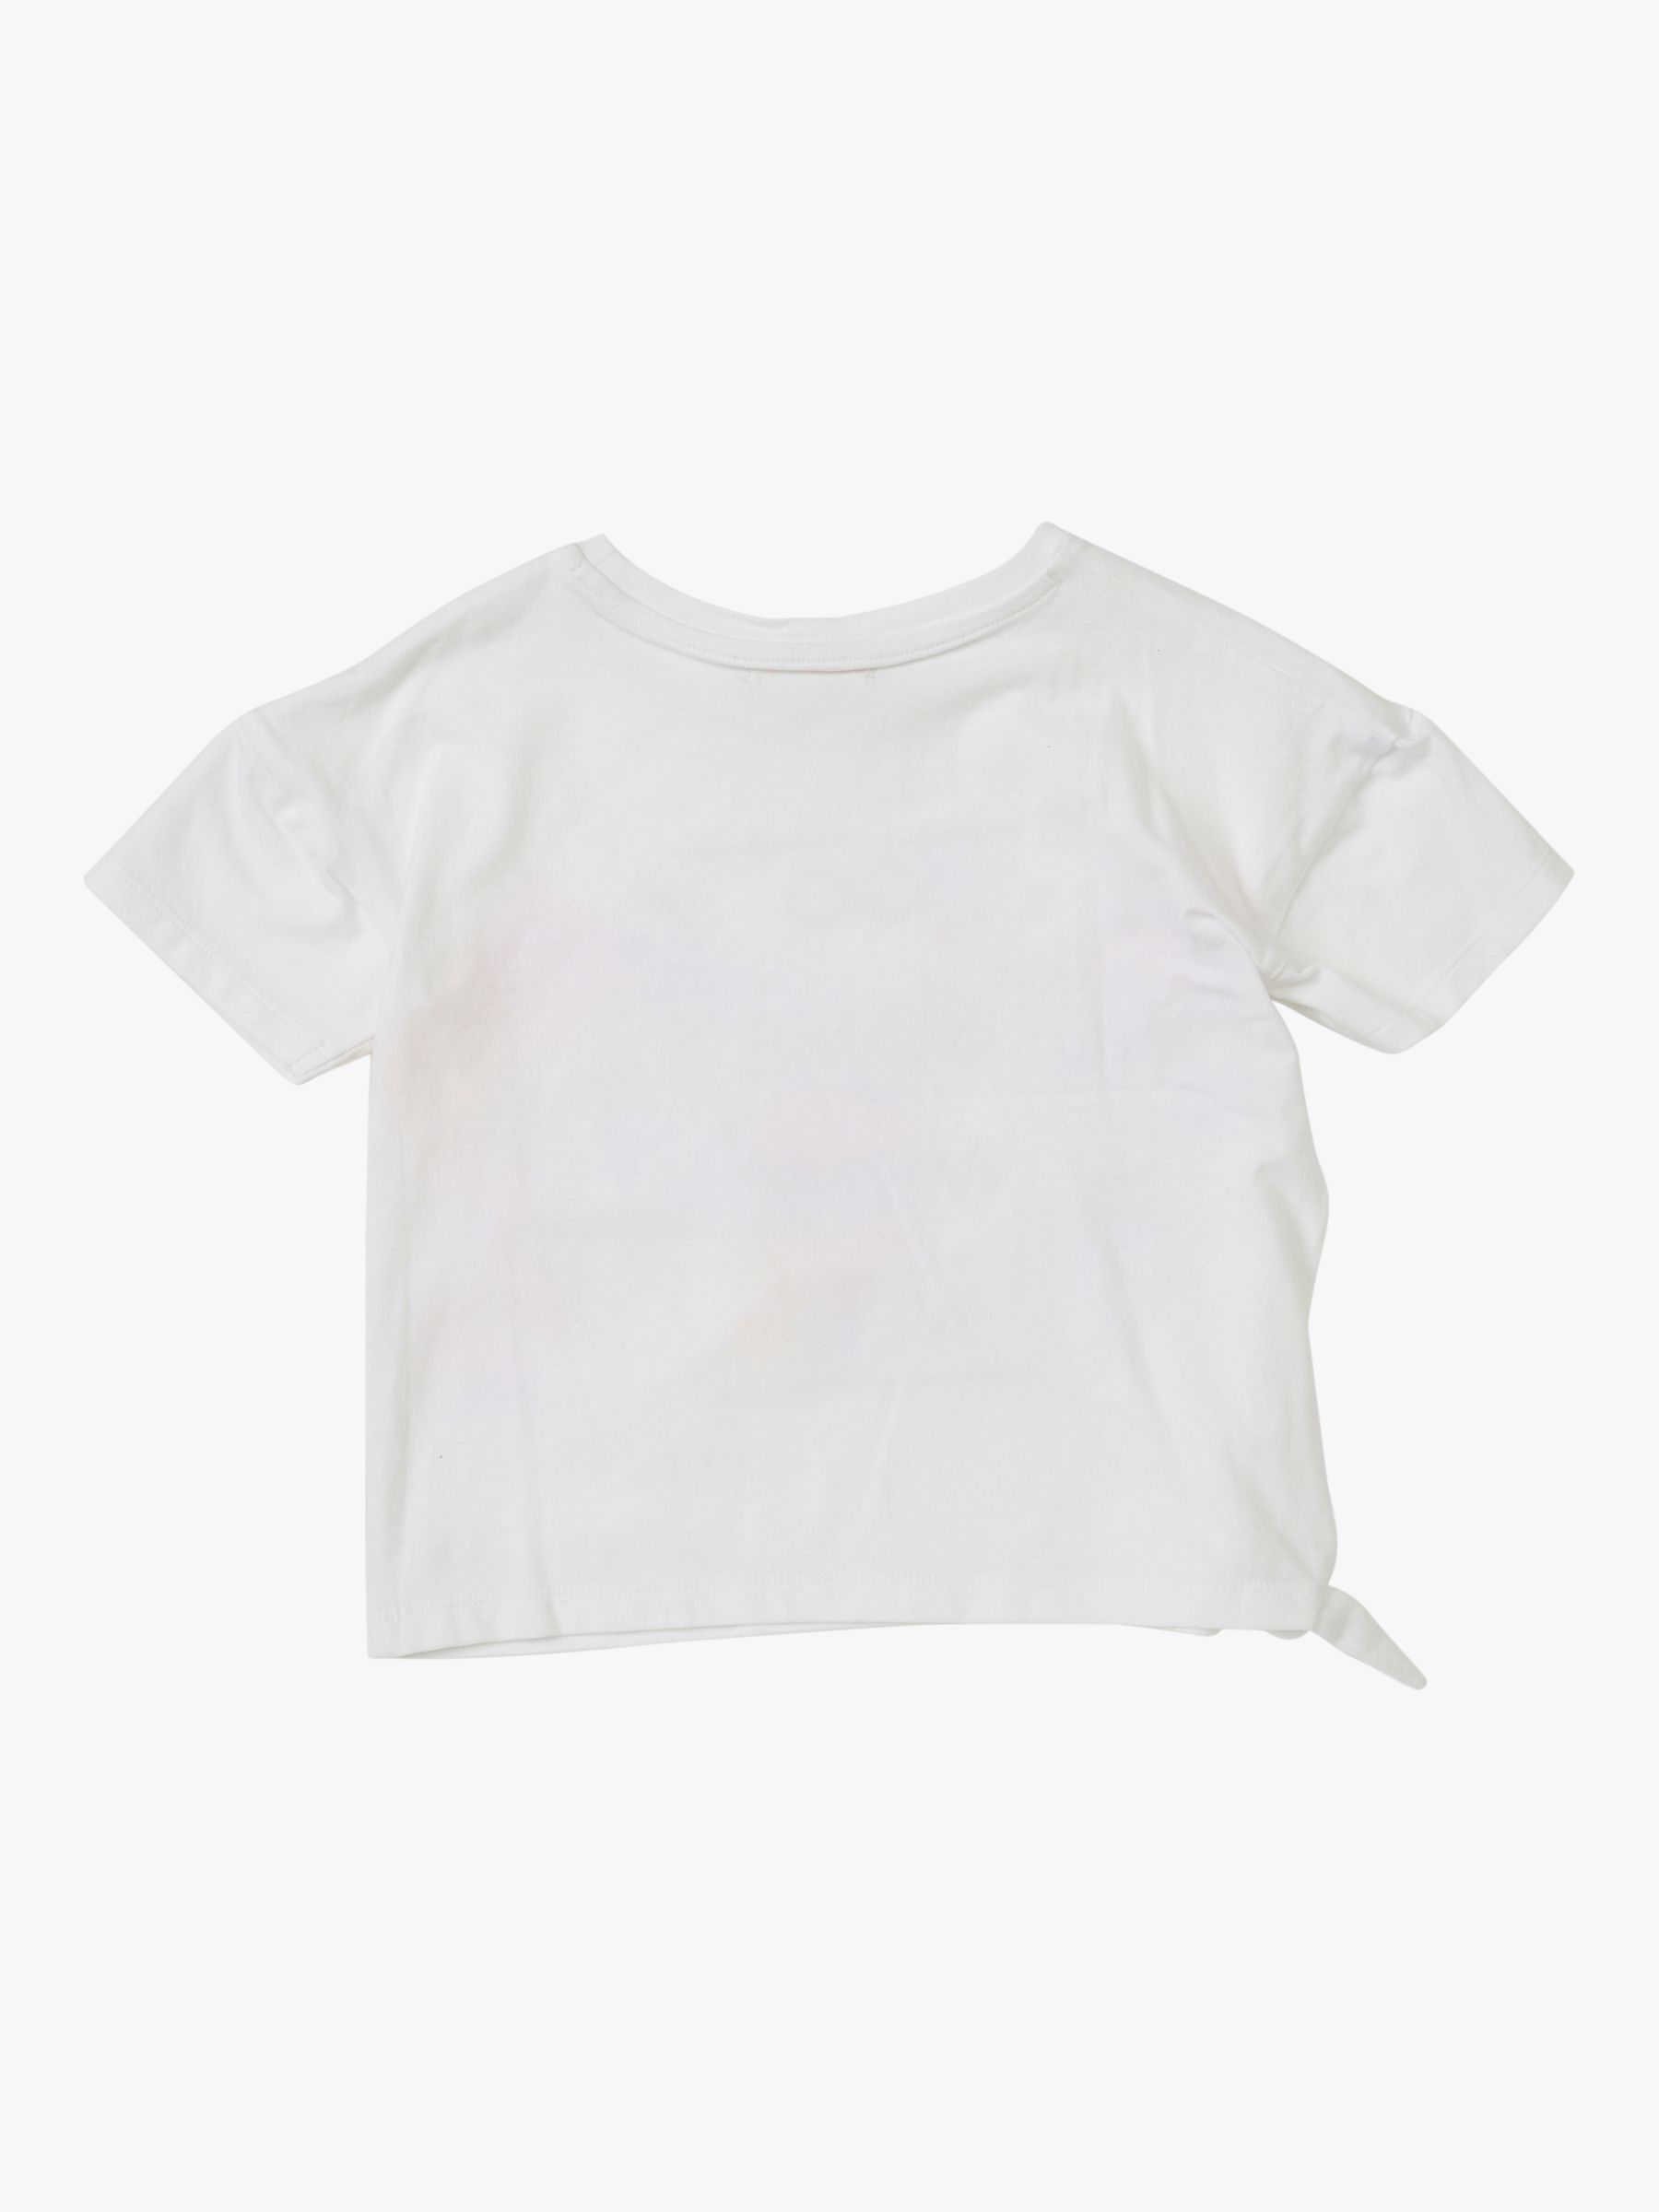 Angel & Rocket Brooke Tie Side T-Shirt, White/Multi, 3 years